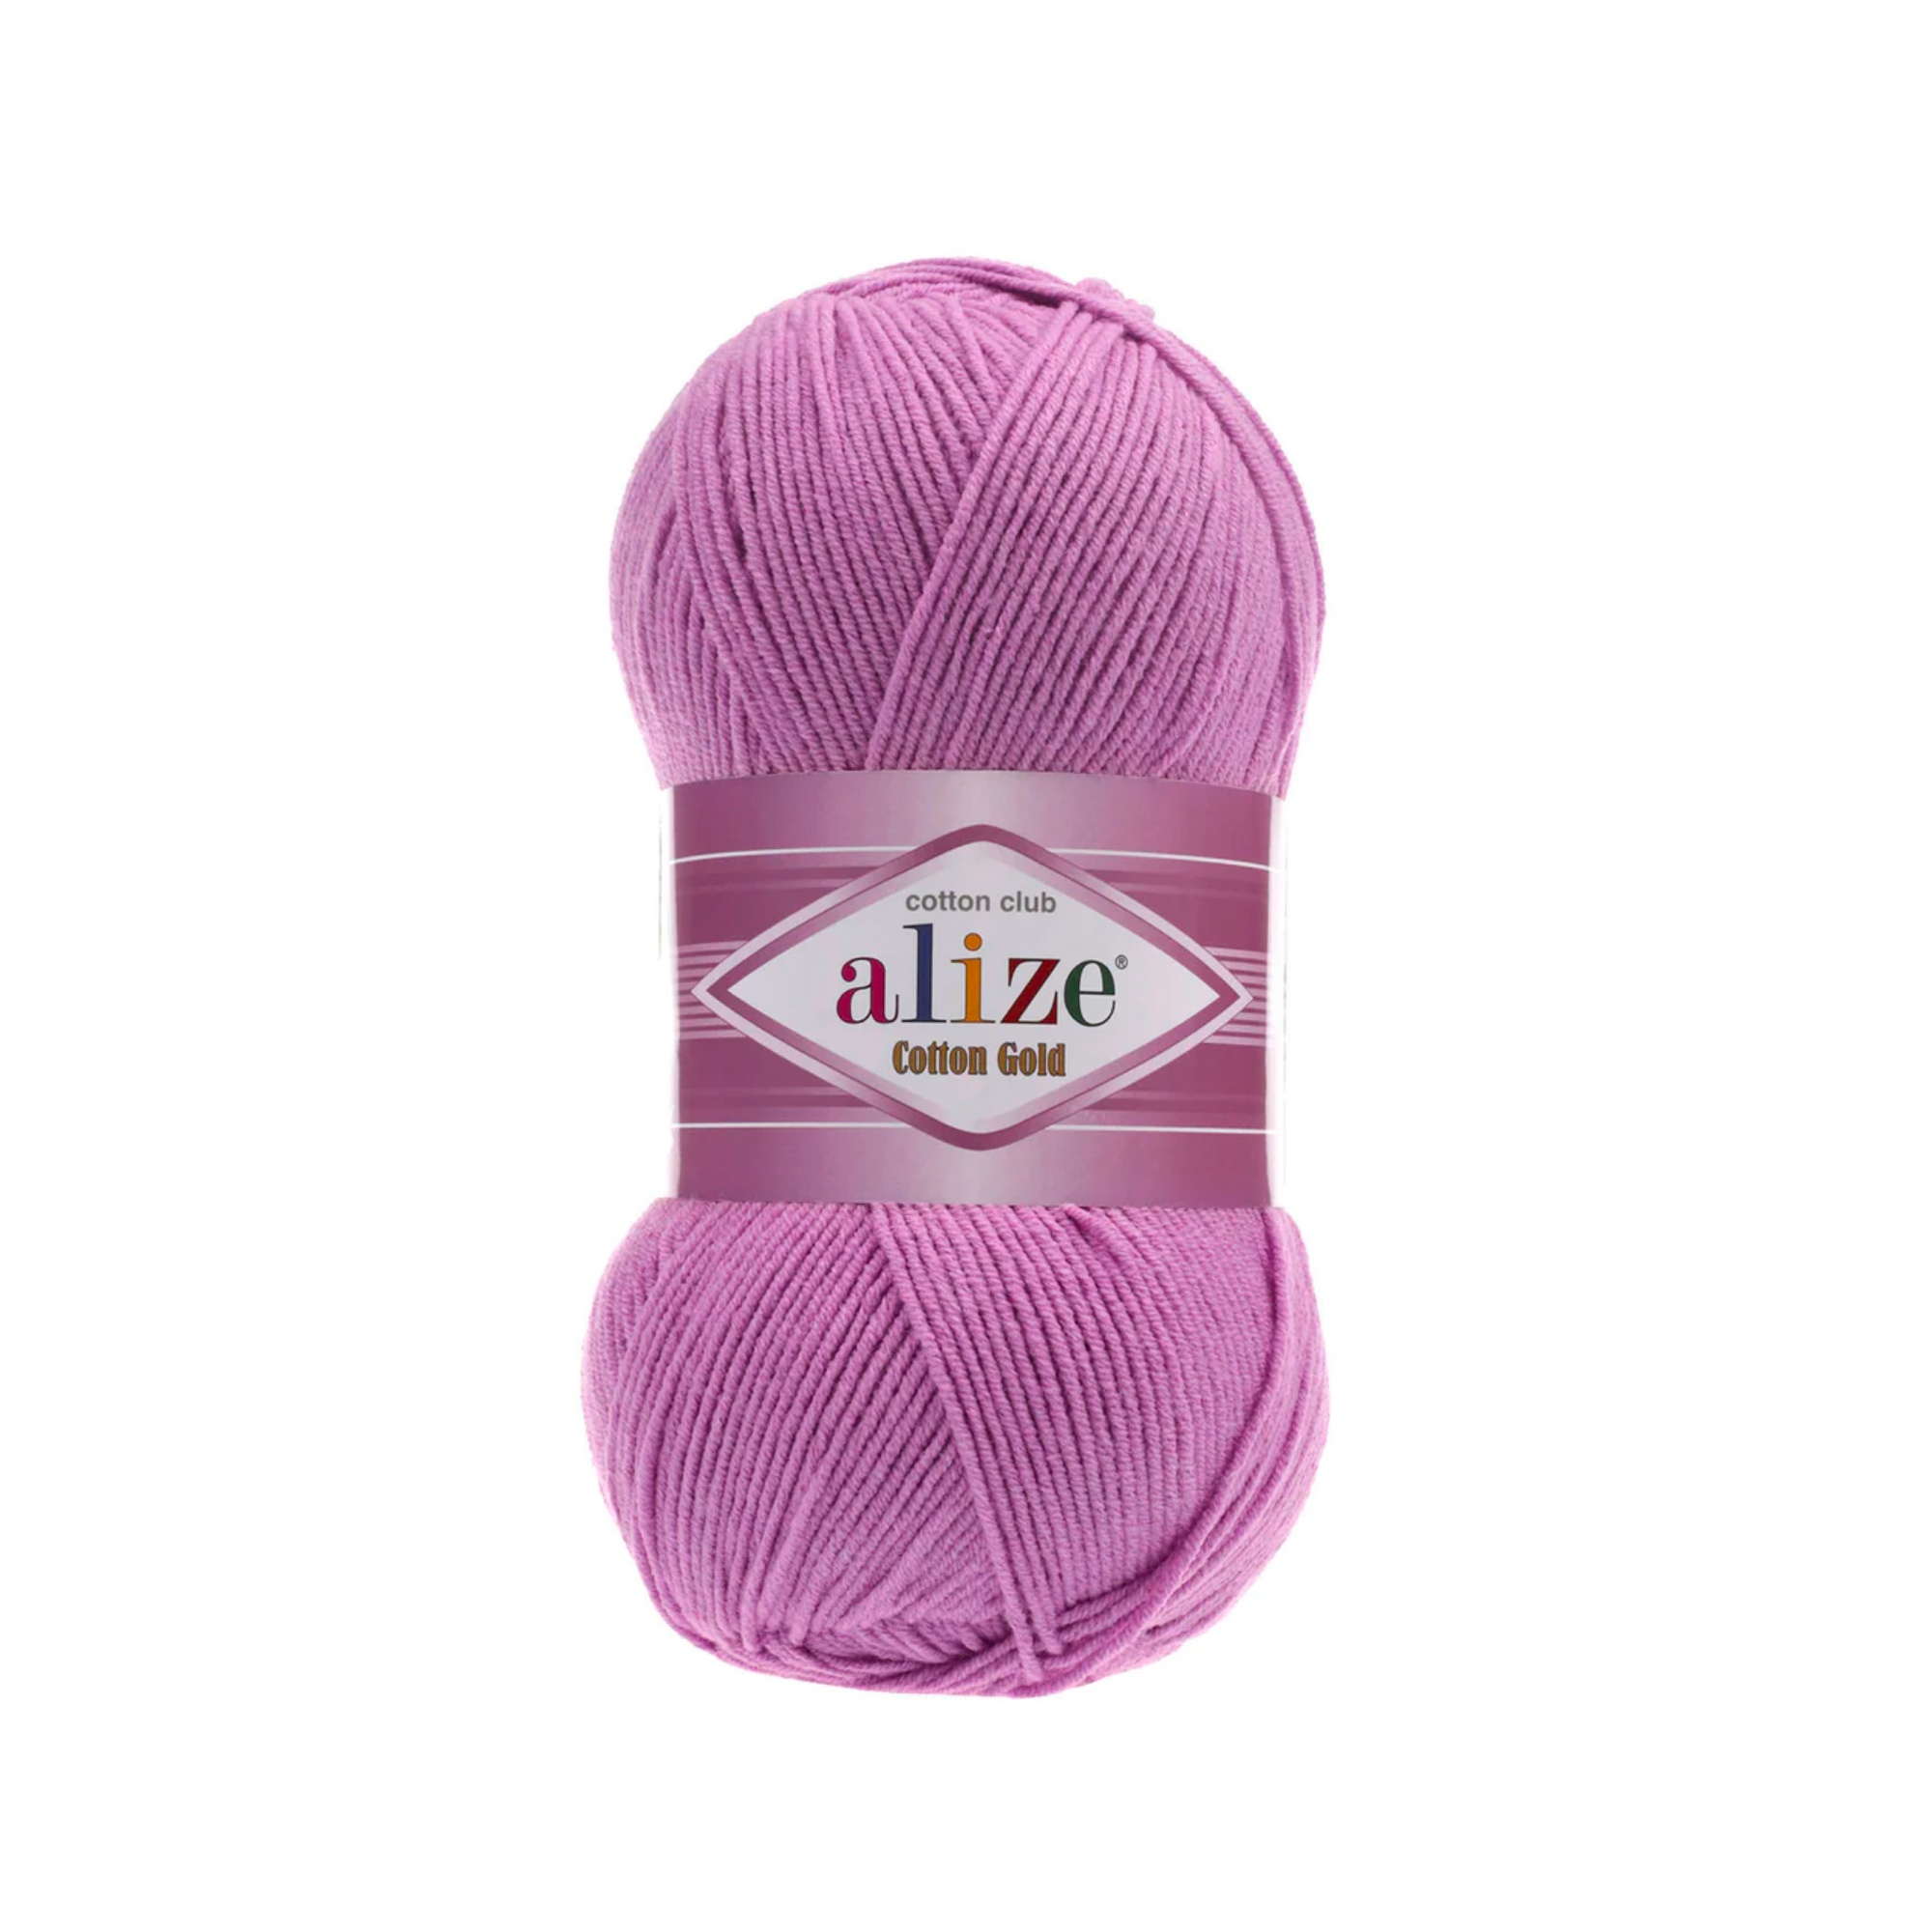 Alize Cotton Gold Knitting Yarn, Light Yellow - 187